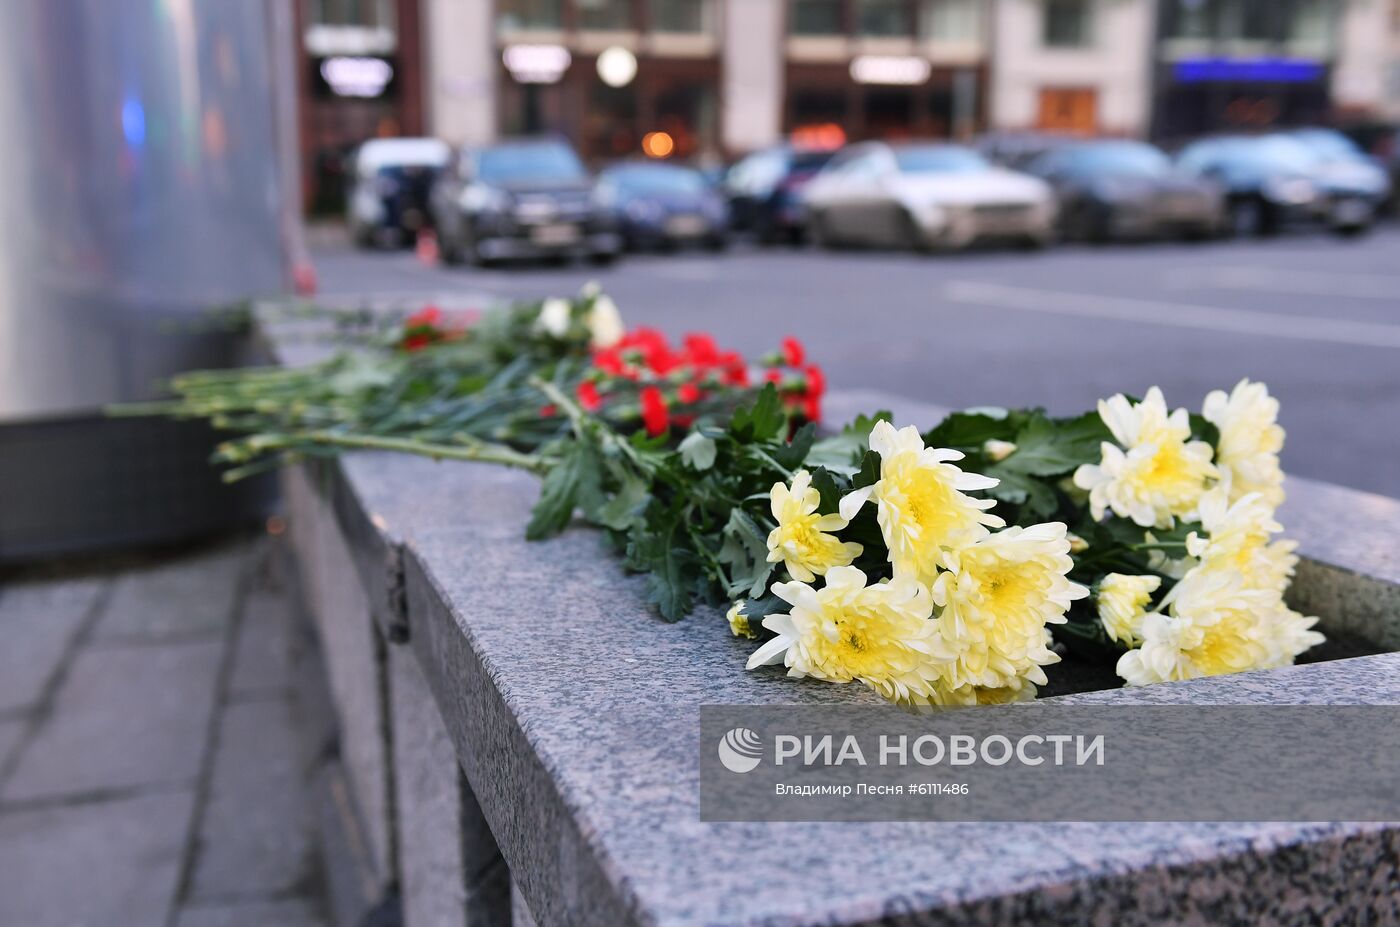 Ситуация на месте стрельбы в центре Москвы